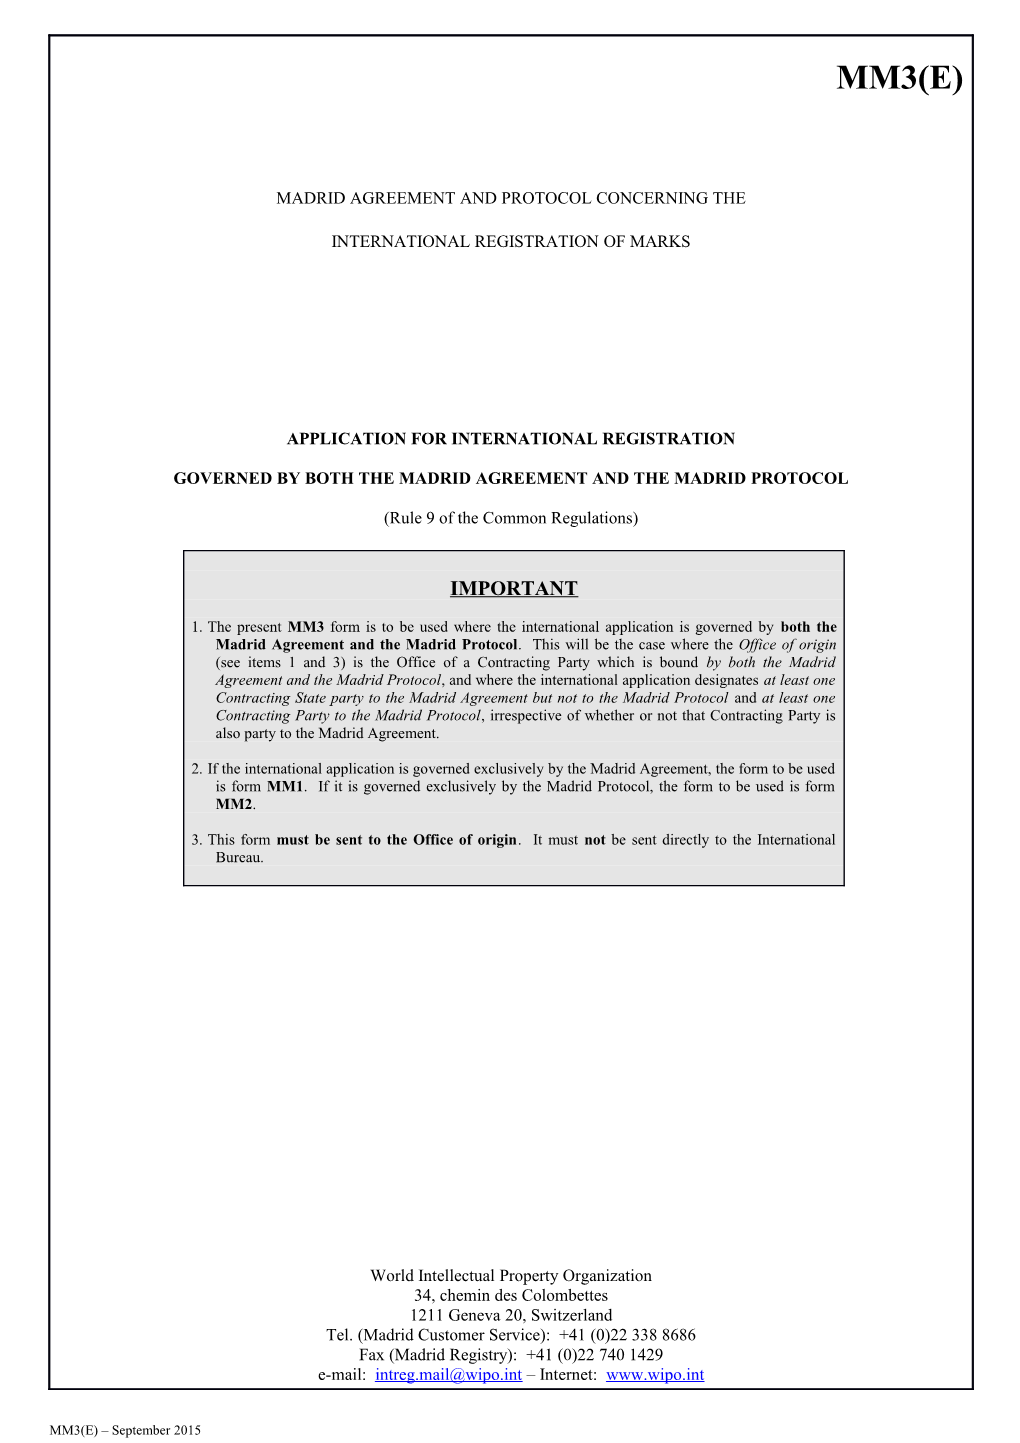 Form MM3 (Madrid Agreement Concerning the International Registration of Marks)